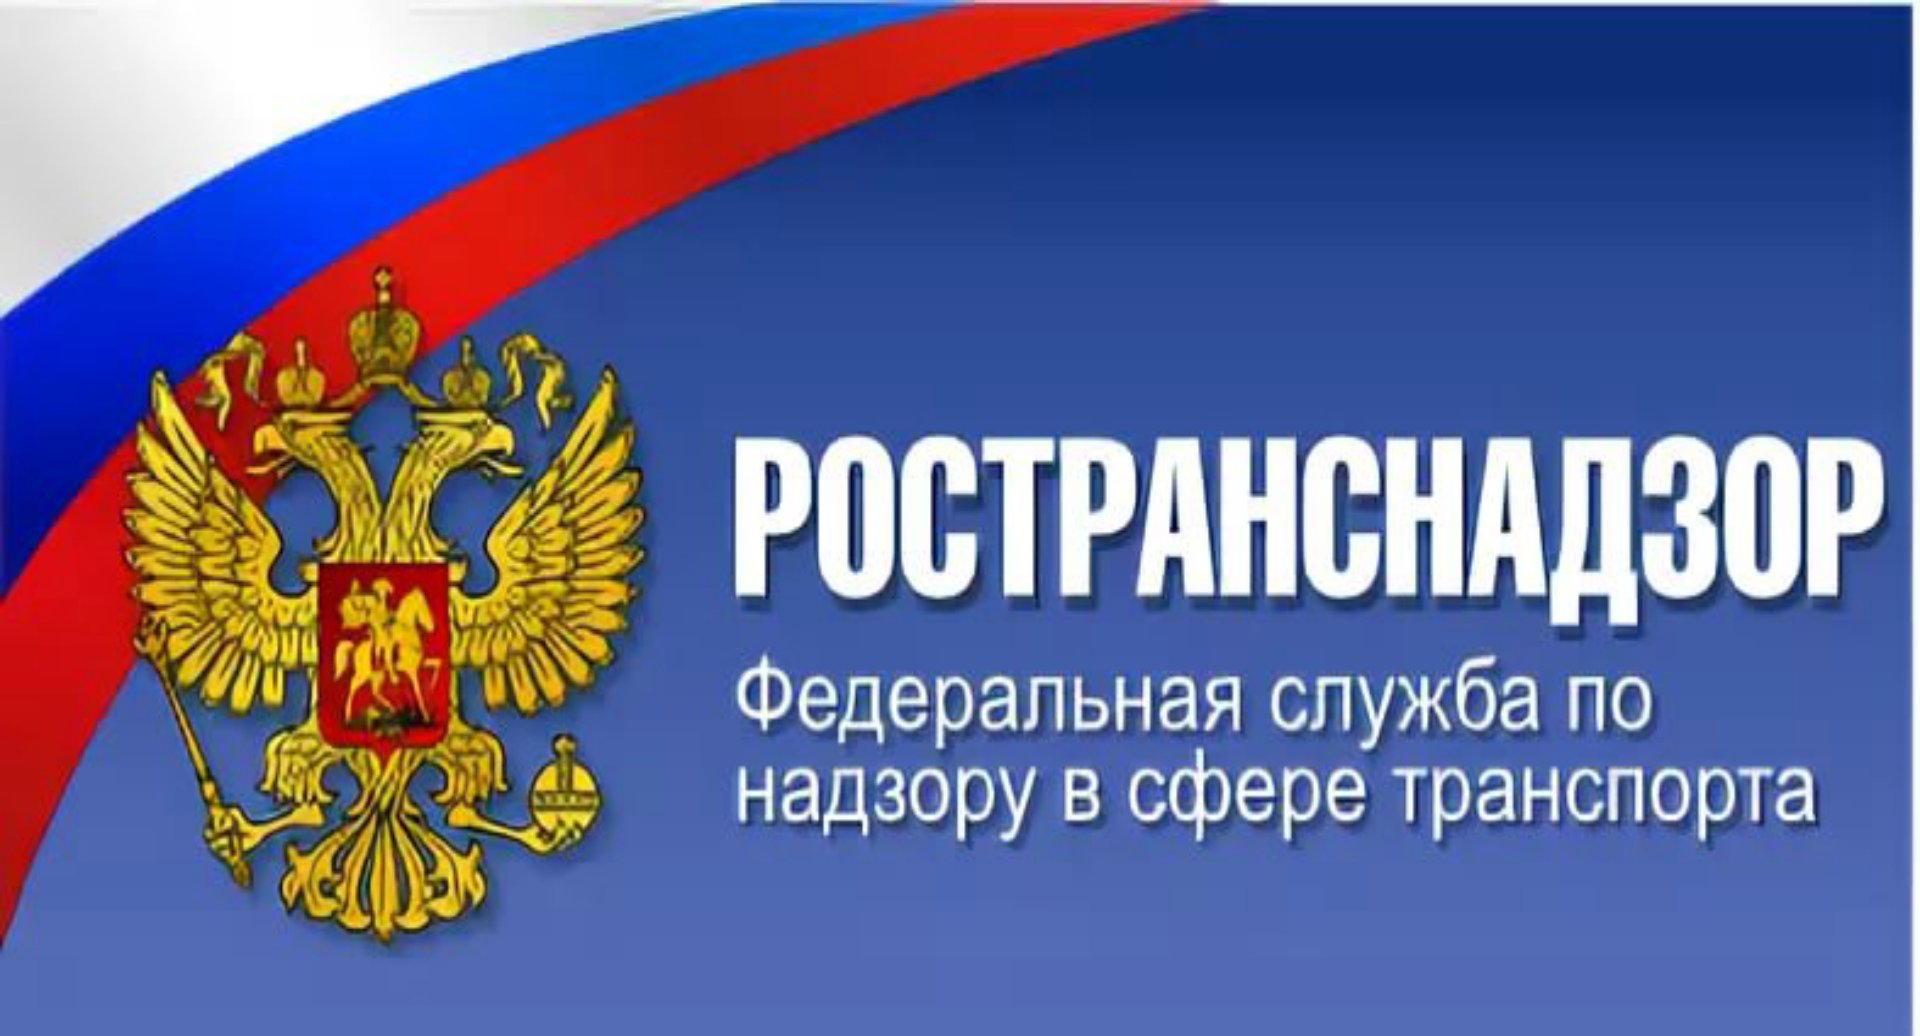 О внесении изменений в статью 12.21.1 Кодекса Российской Федерации об административных правонарушениях